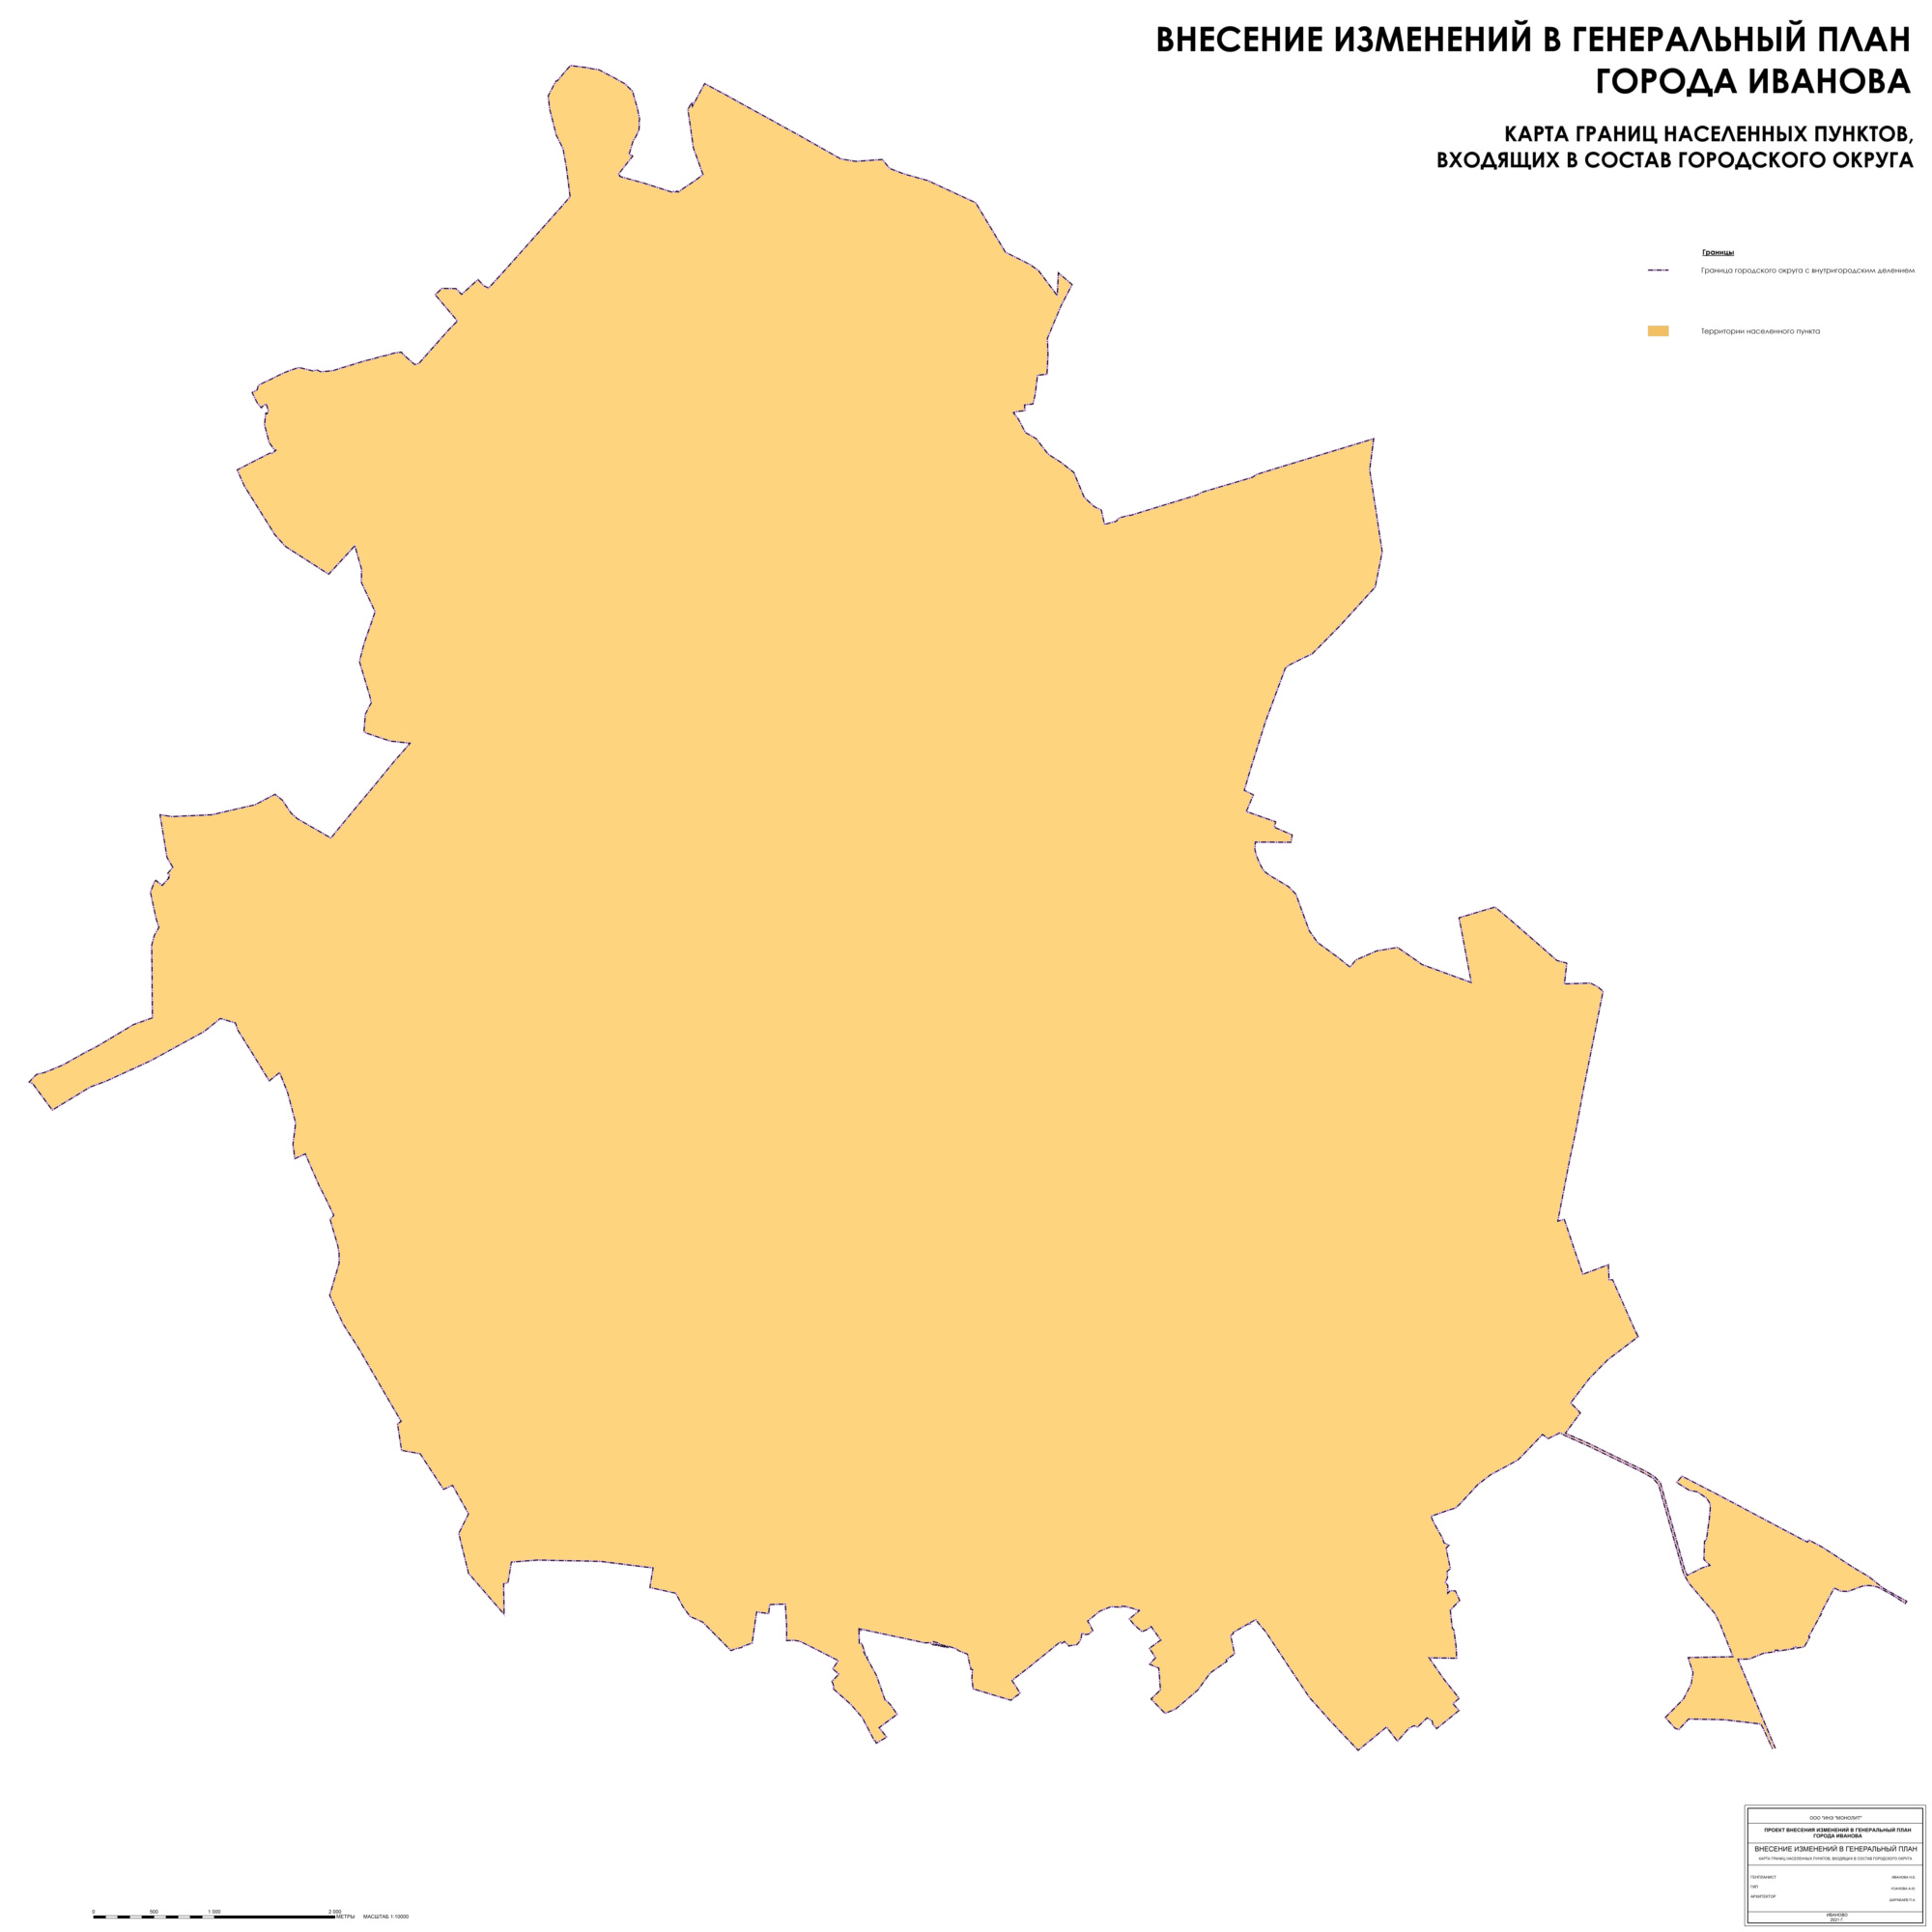 Карта границ населенных пунктов, входящих в состав городского округа